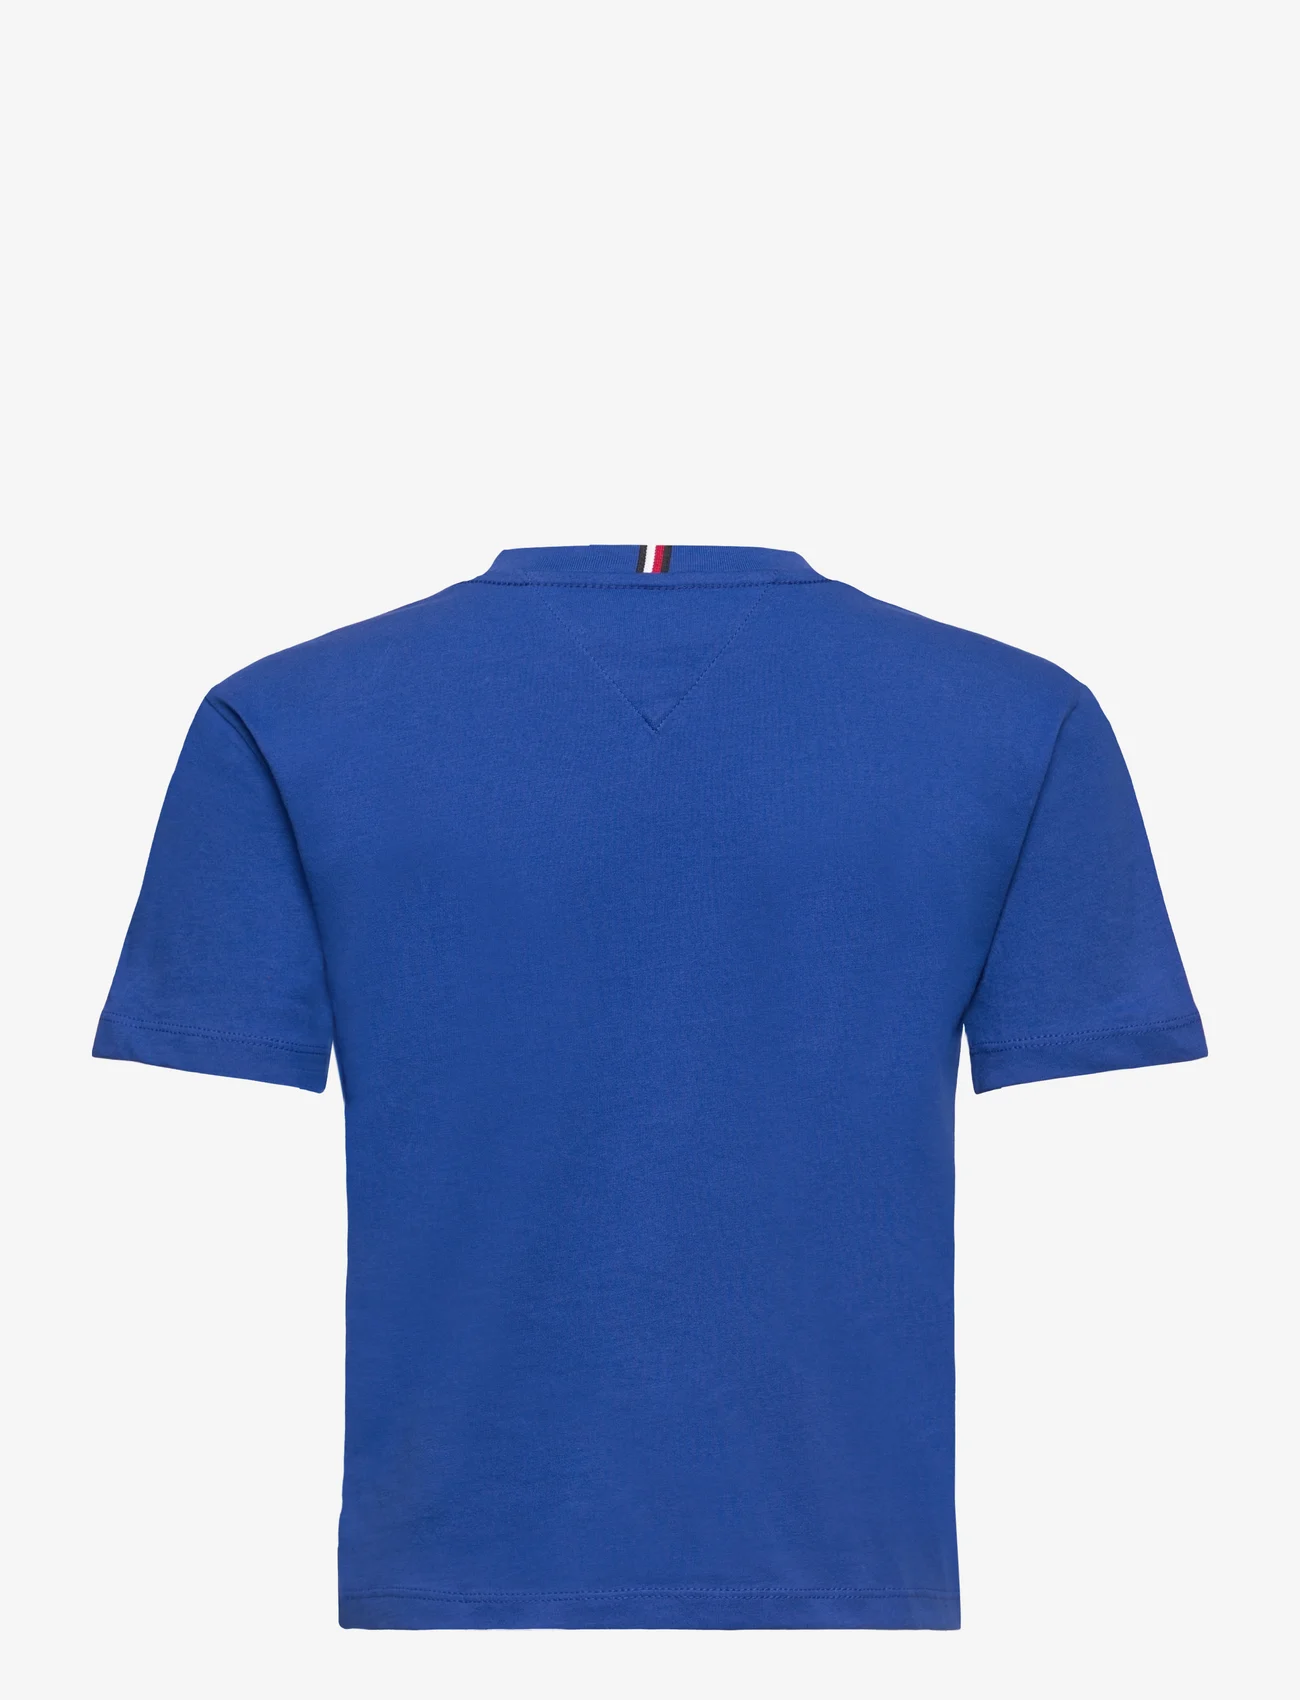 Tommy Hilfiger - ESSENTIAL TEE S/S - kortærmede t-shirts - ultra blue - 1